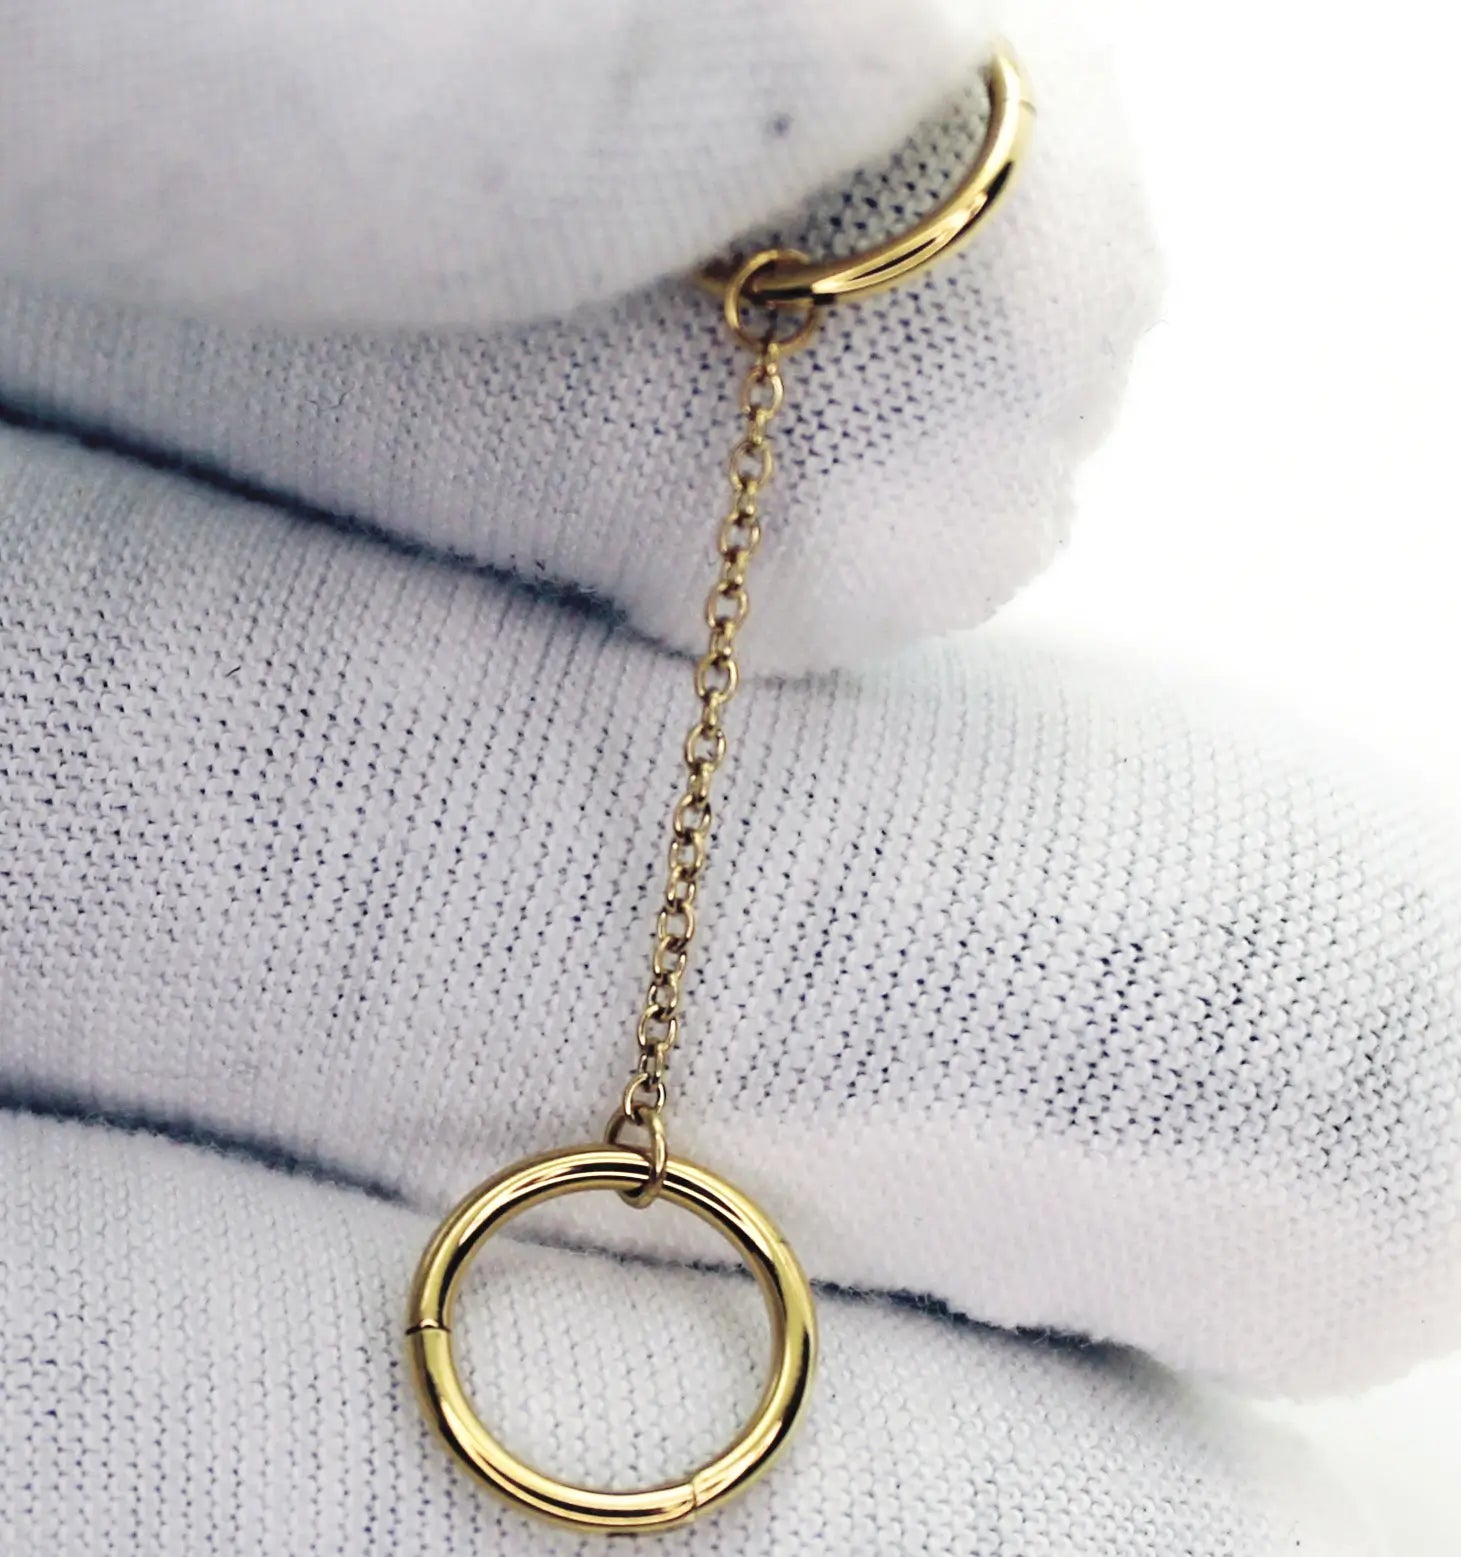 Présentation d'un bijou de piercing en titane composé d'un double anneau relié par une chainette. Version PVD Or présentée sur des gants en coton